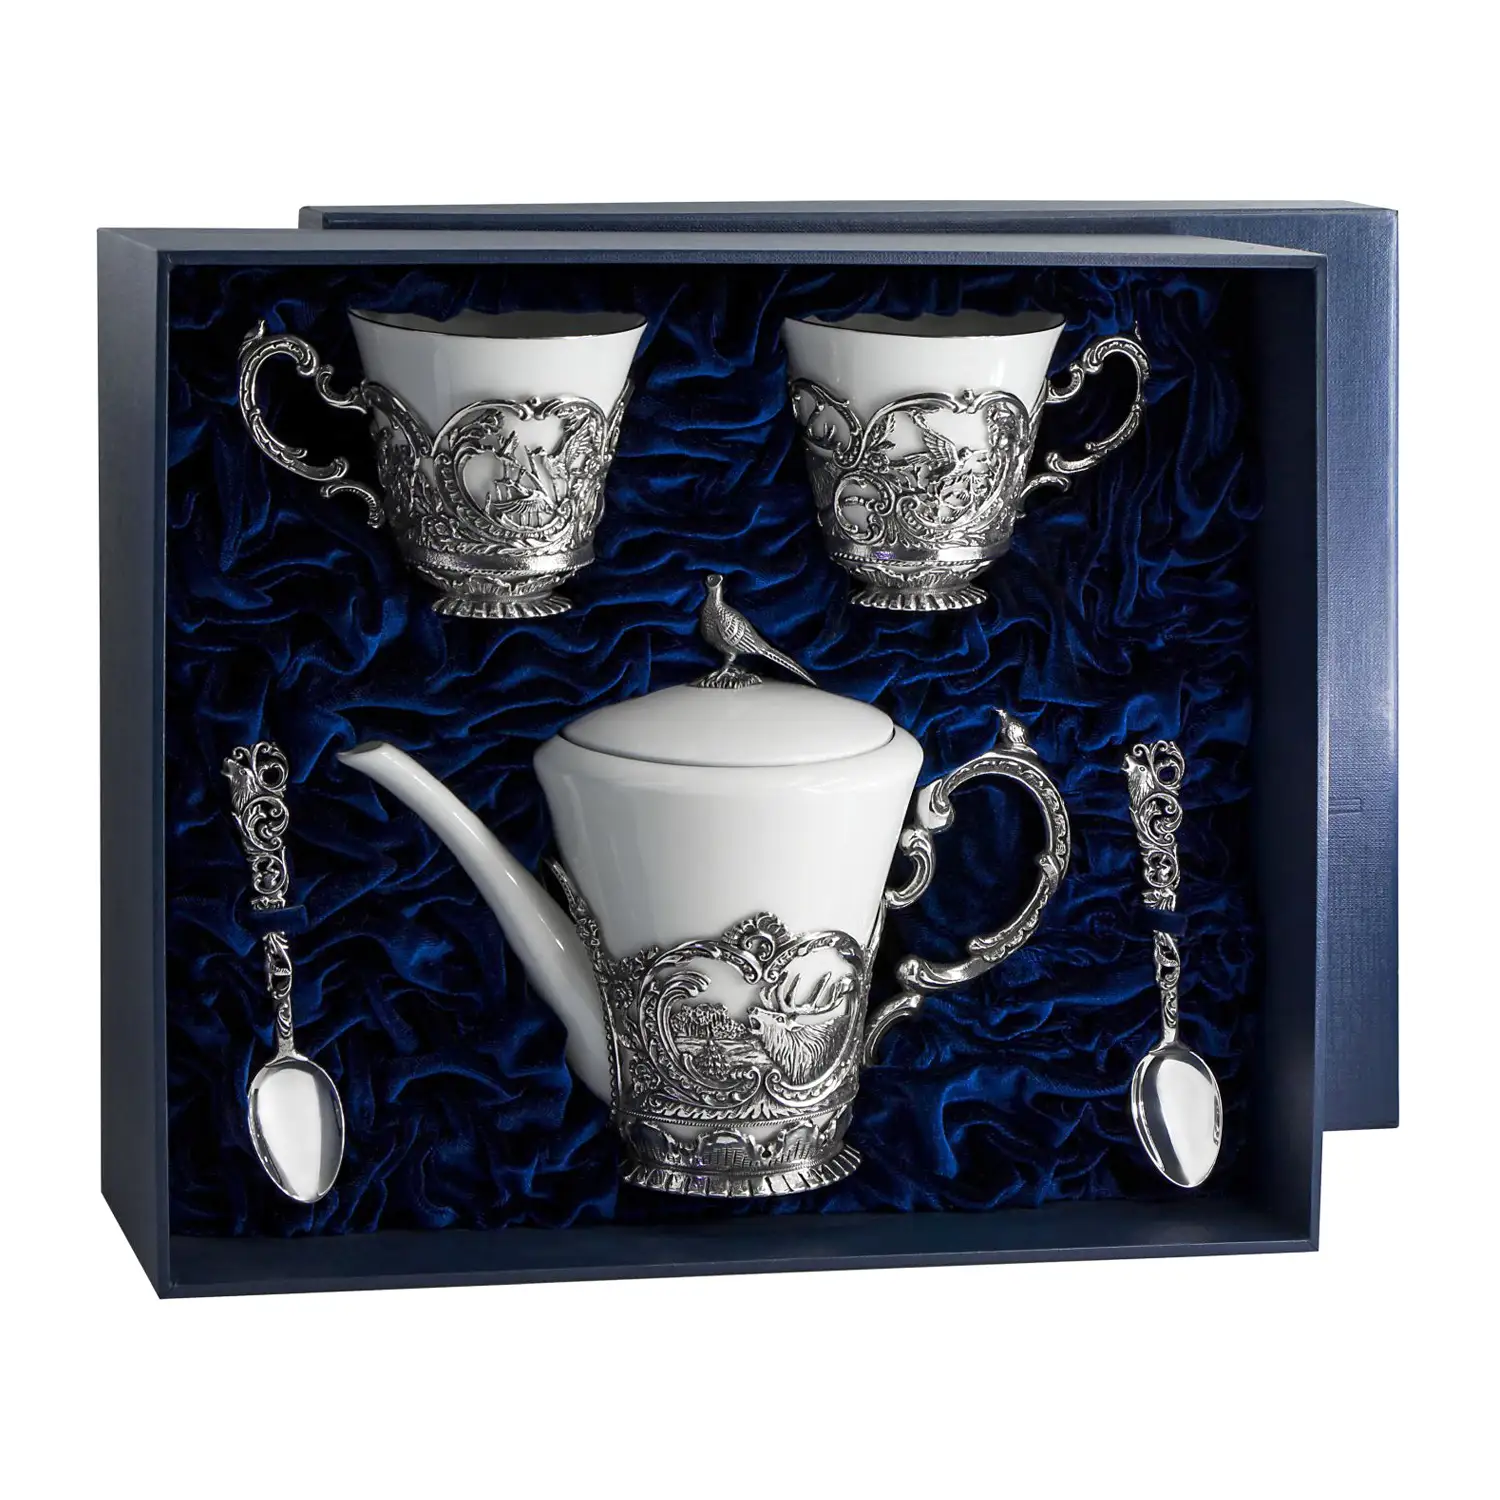 Набор Королевская охота: ложка, чашка, чайник (Серебро 925) набор королевская охота ложка чашка сахарница серебро 925